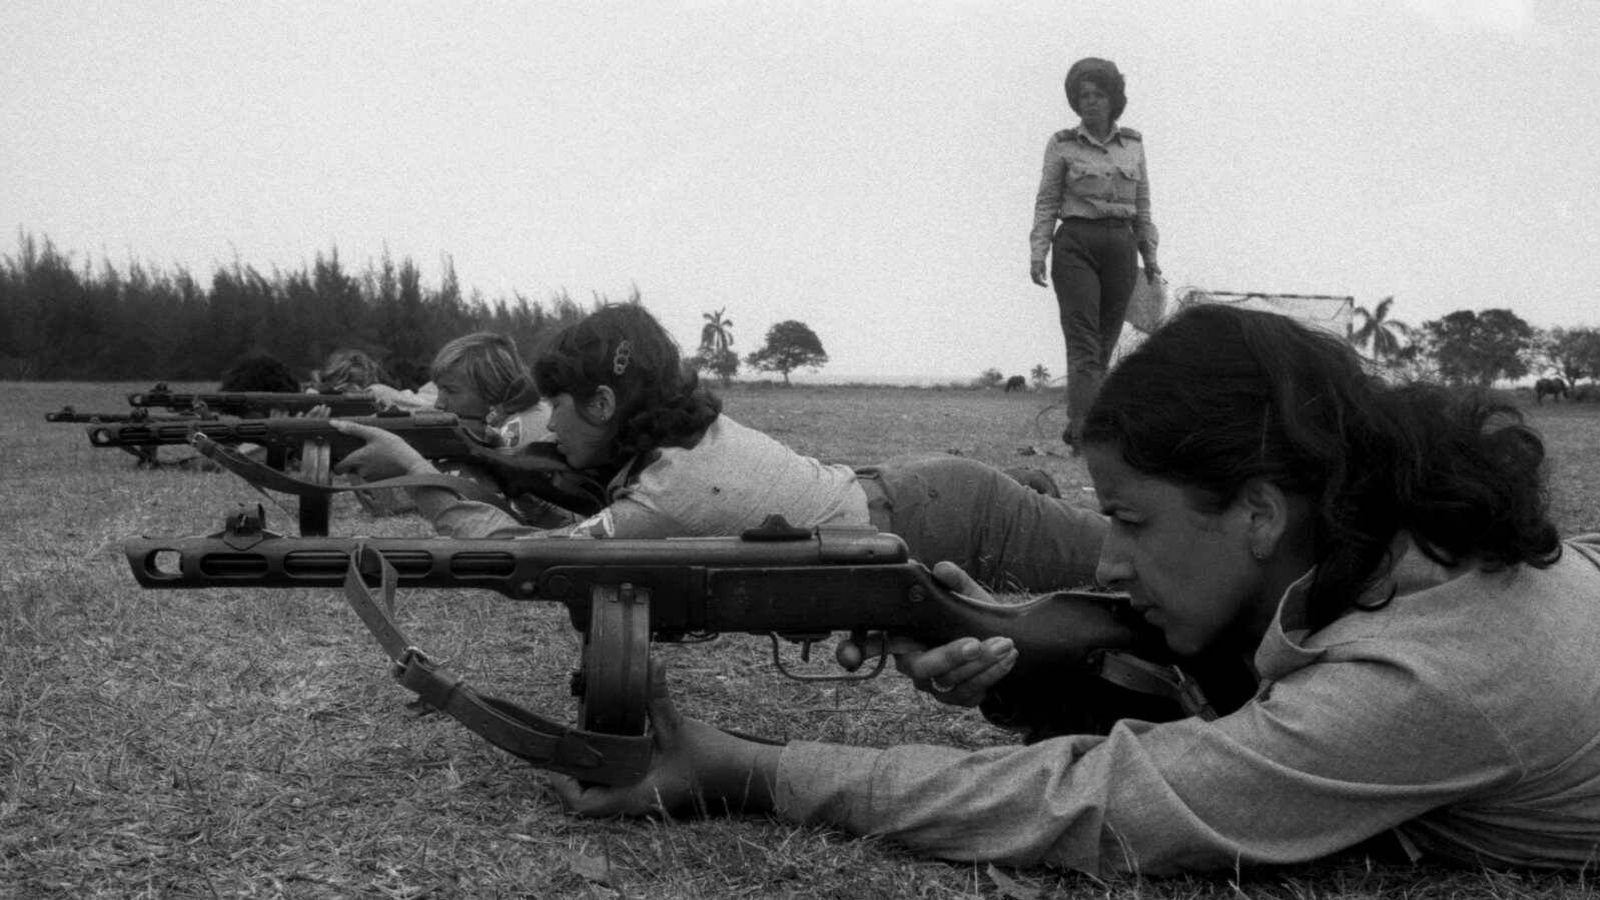 Campo de entrenamiento de las milicias territoriales, La Habana Cuba 1982. (Pilar Aymerich)